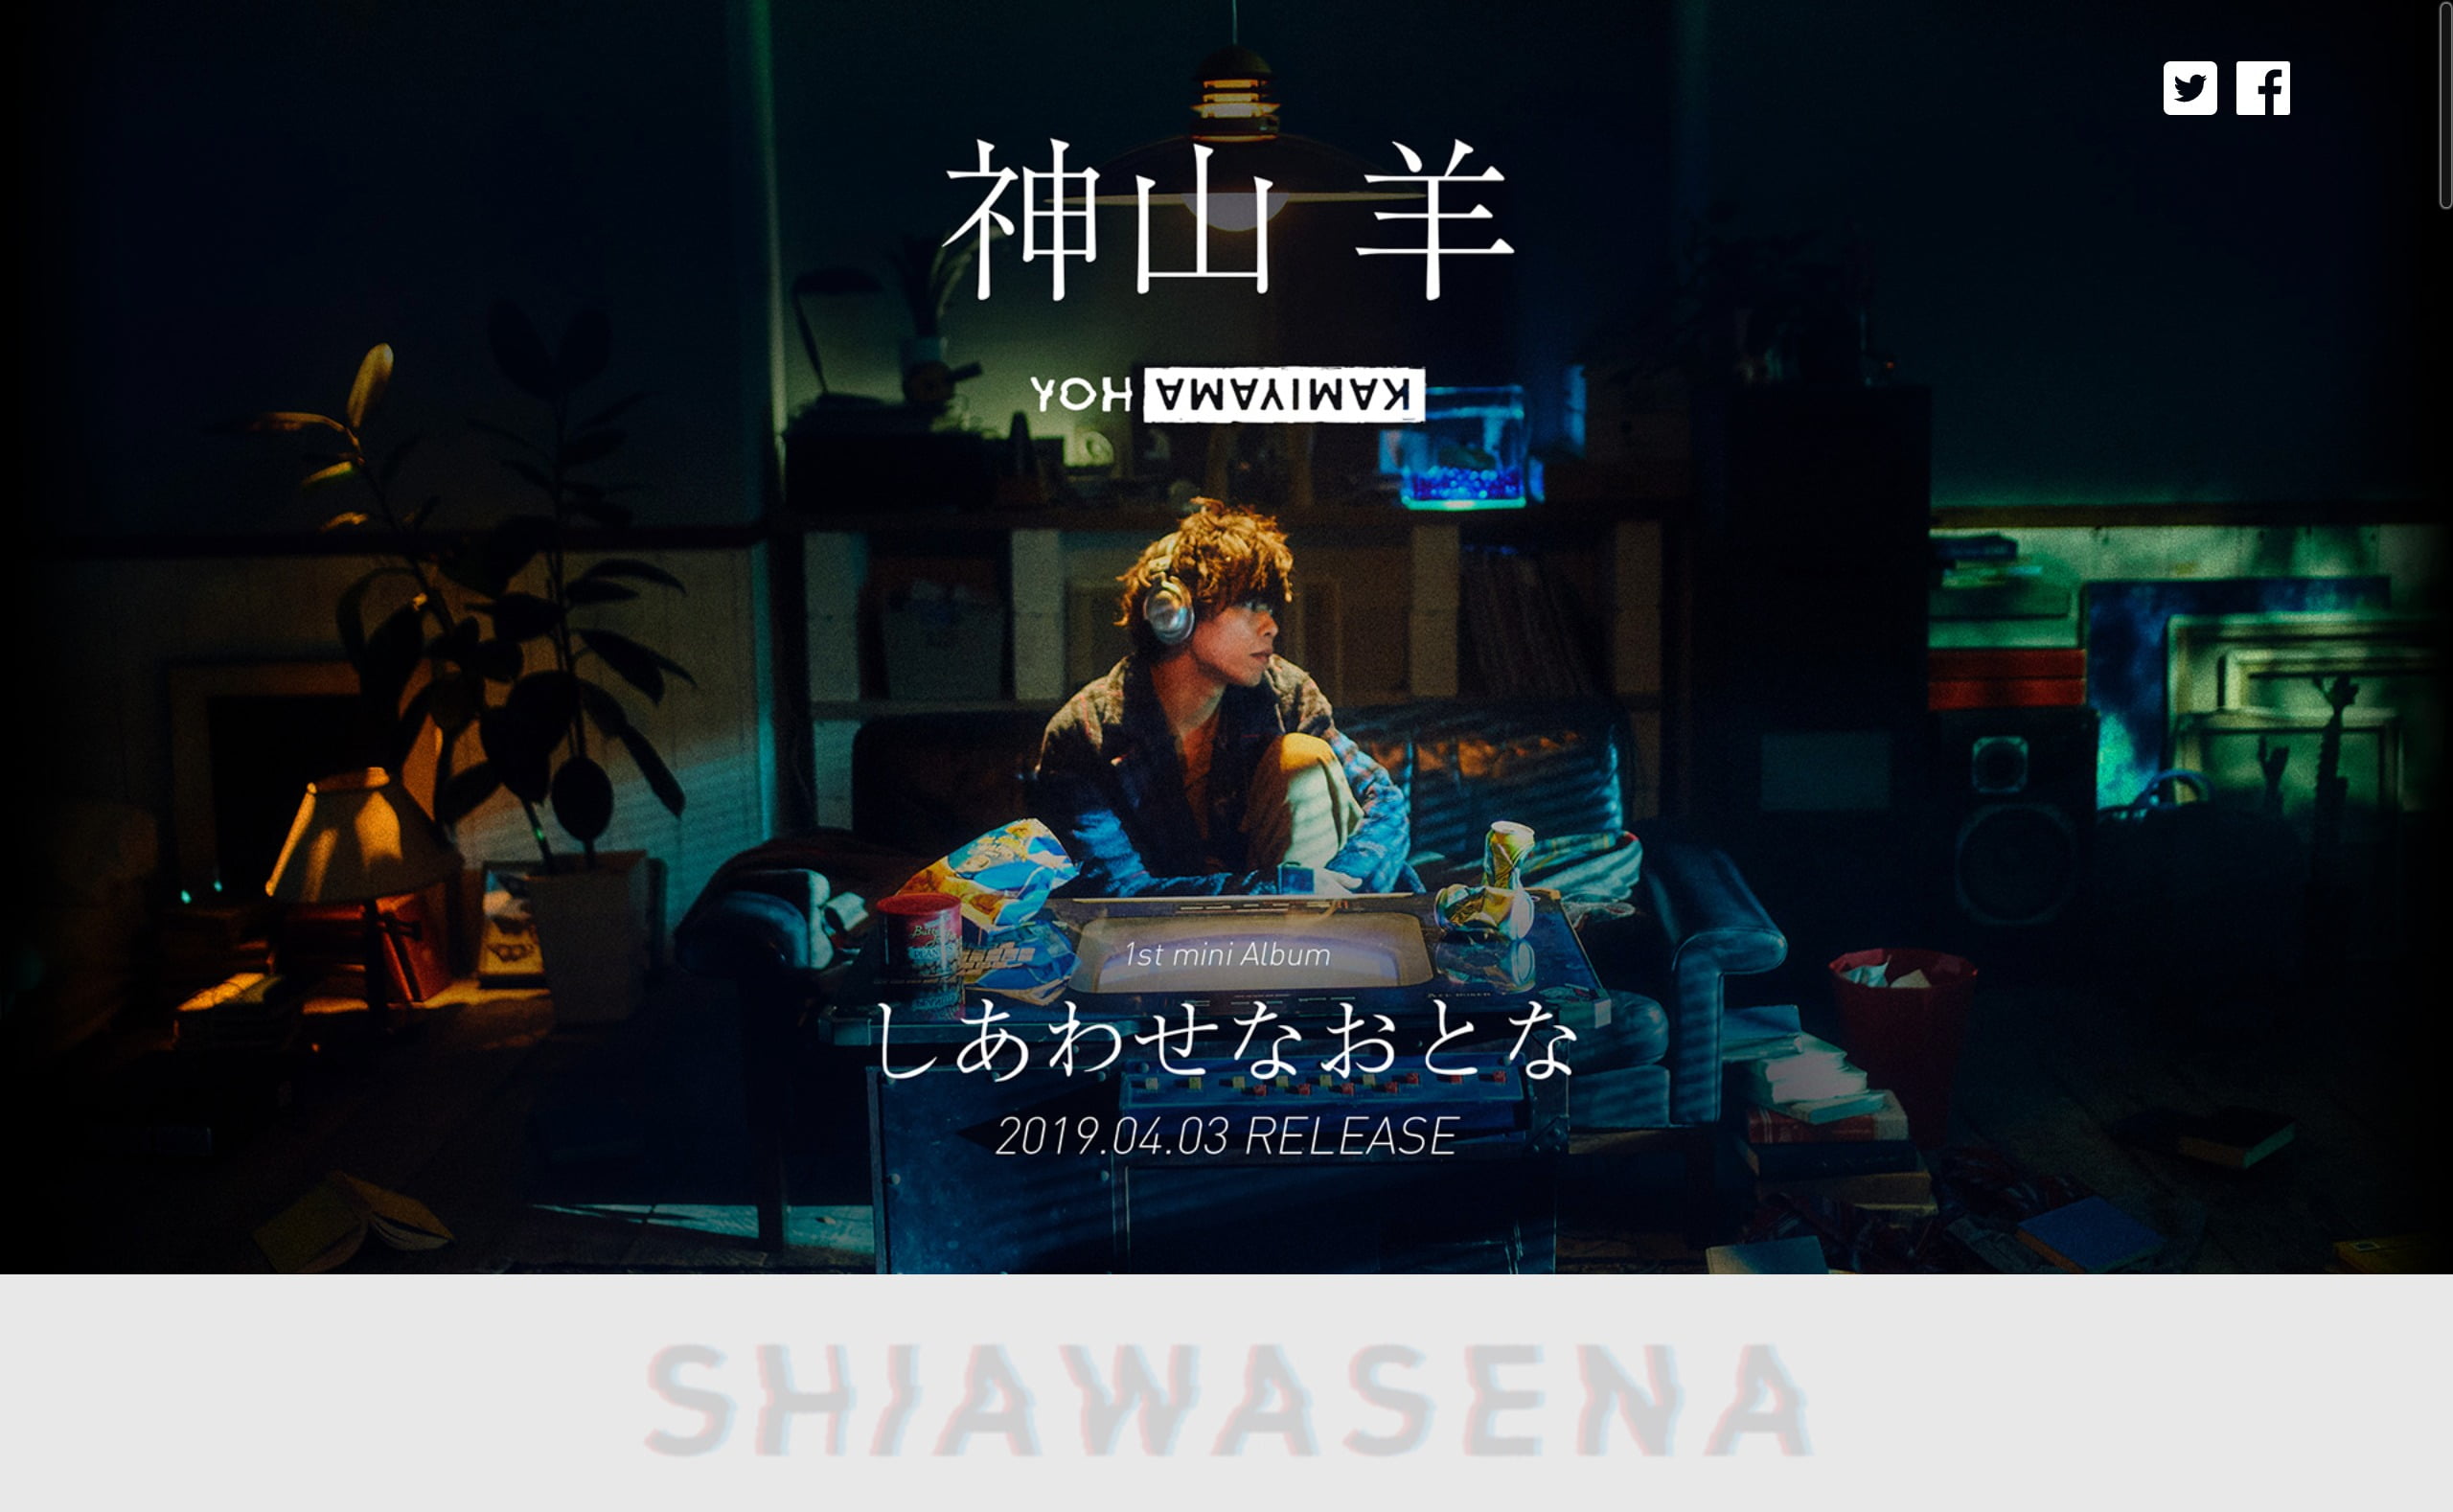 神山羊 1st mini Album「しあわせなおとな」特設サイト | MUSIC WEB 